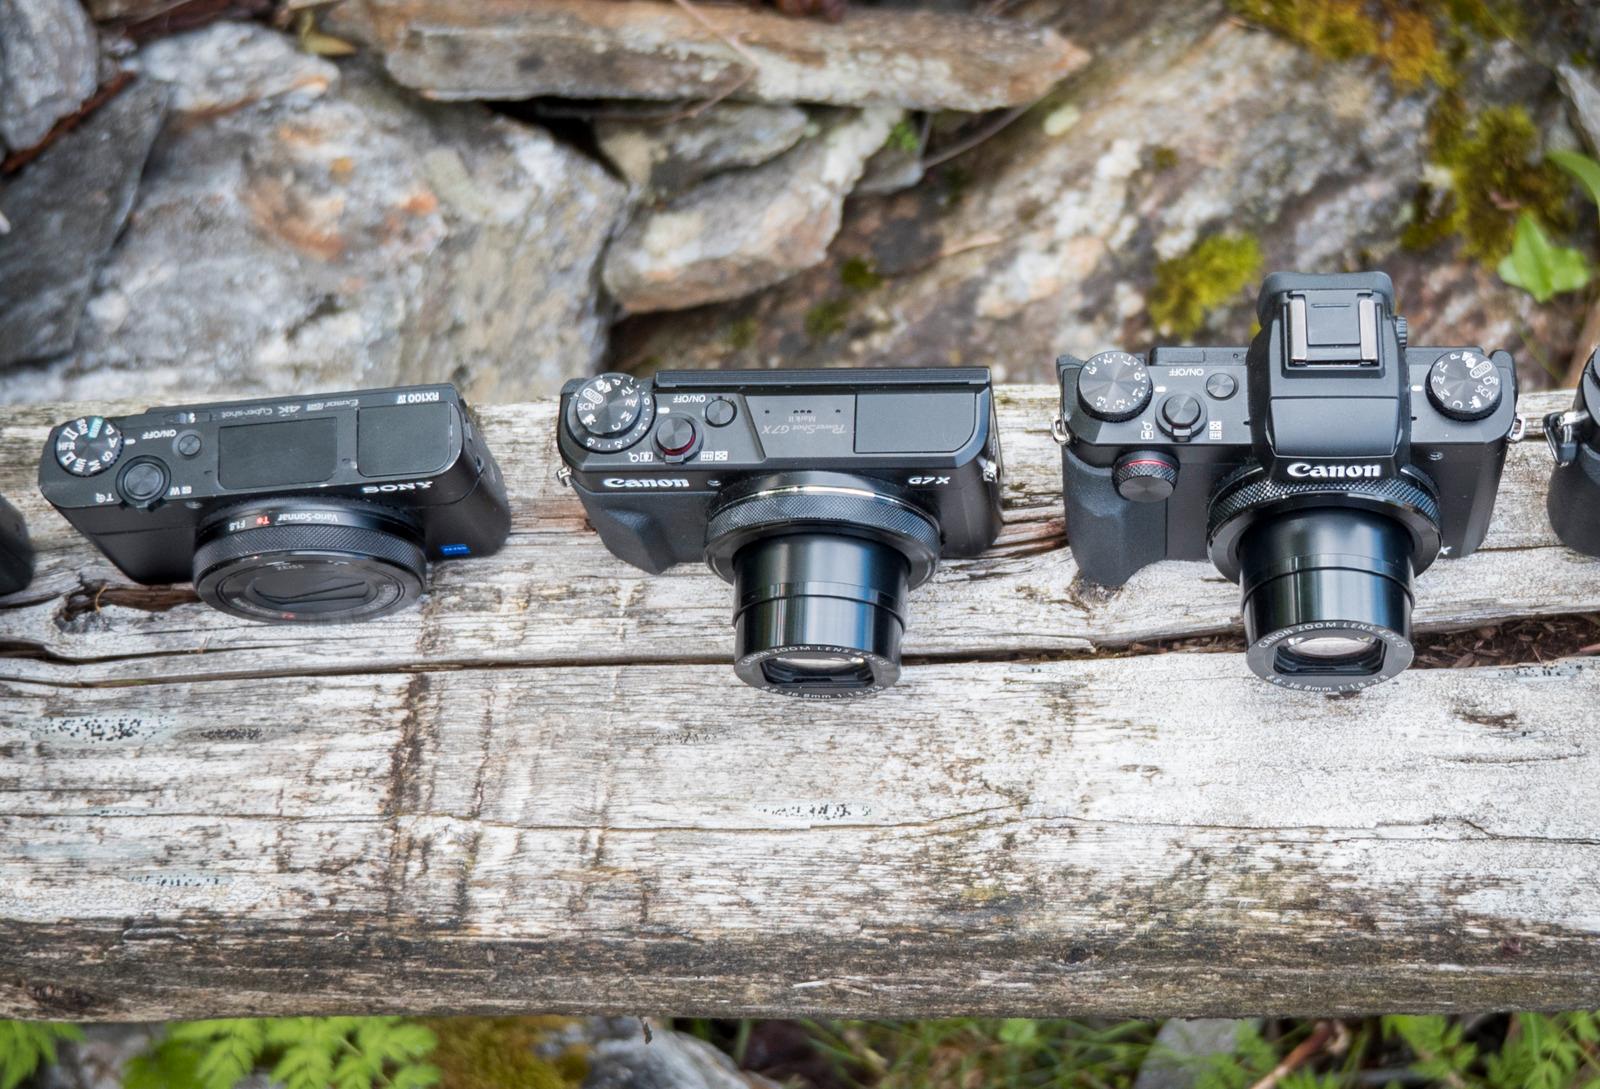 Fra venstre: Sony RX100 IV, Canon G7 X Mark II og Canon G5 X. Bilde: Kristoffer Møllevik